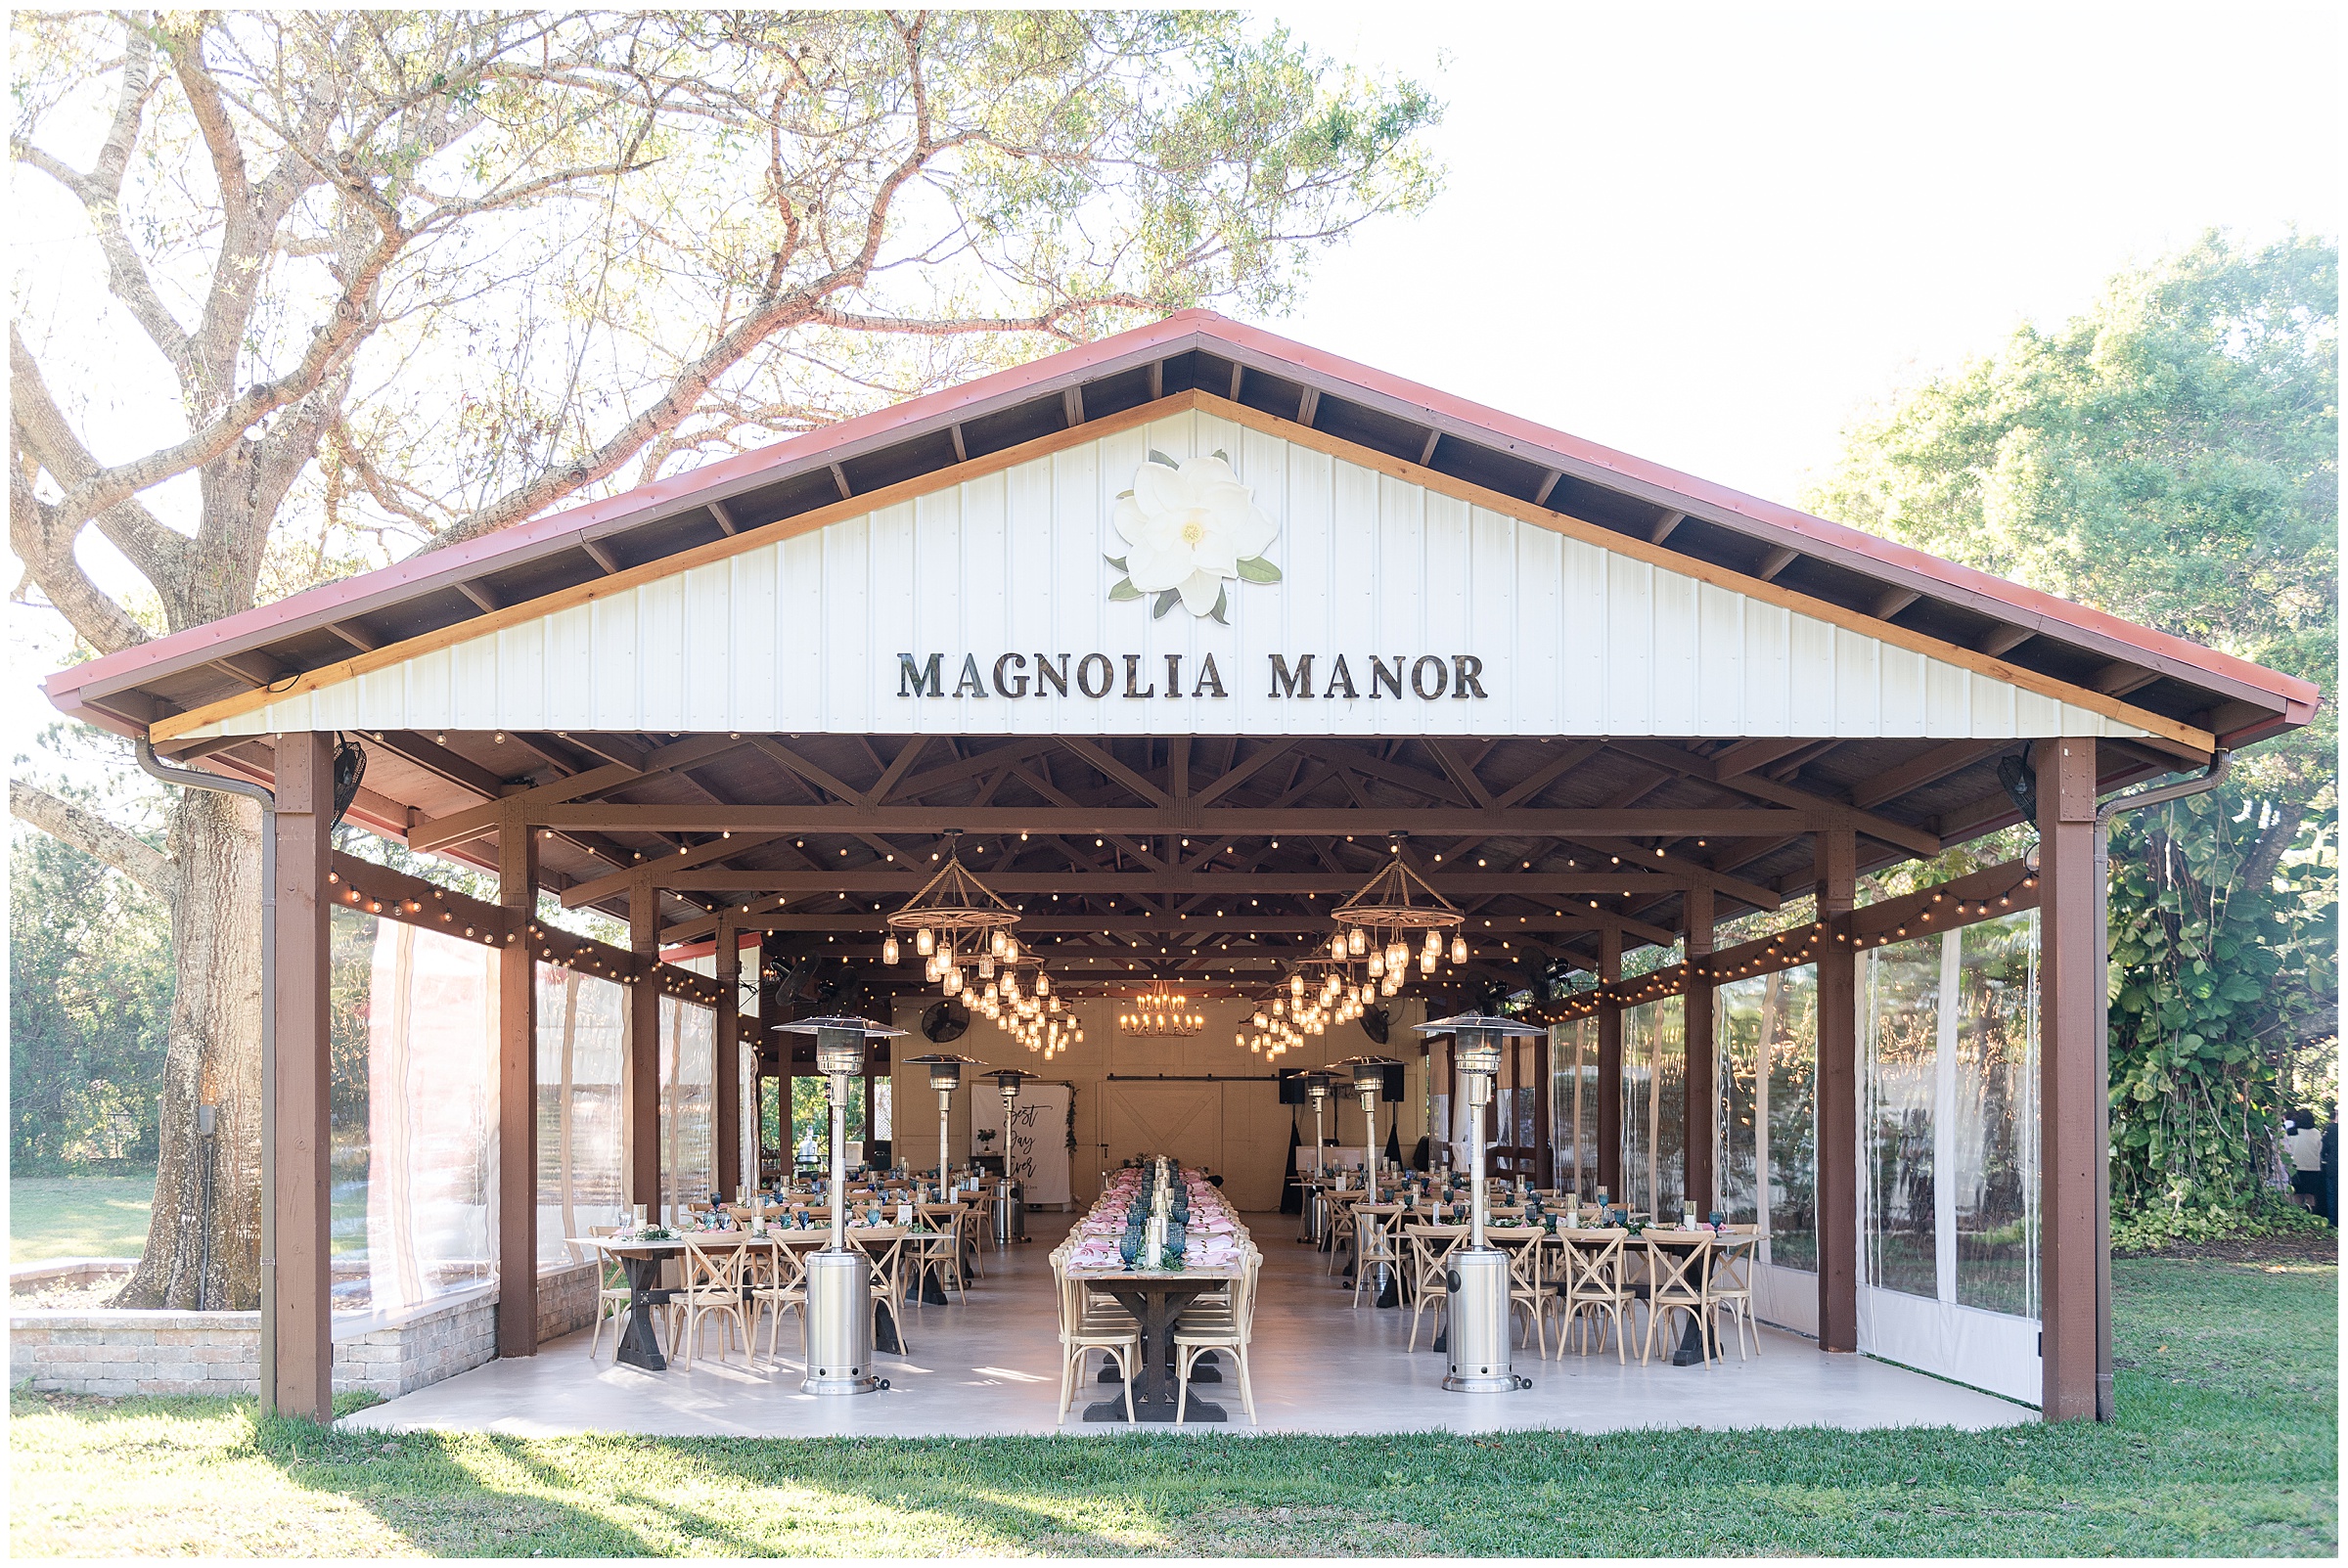 Magnolia Manor Wedding reception area in Vero Beach, Florida